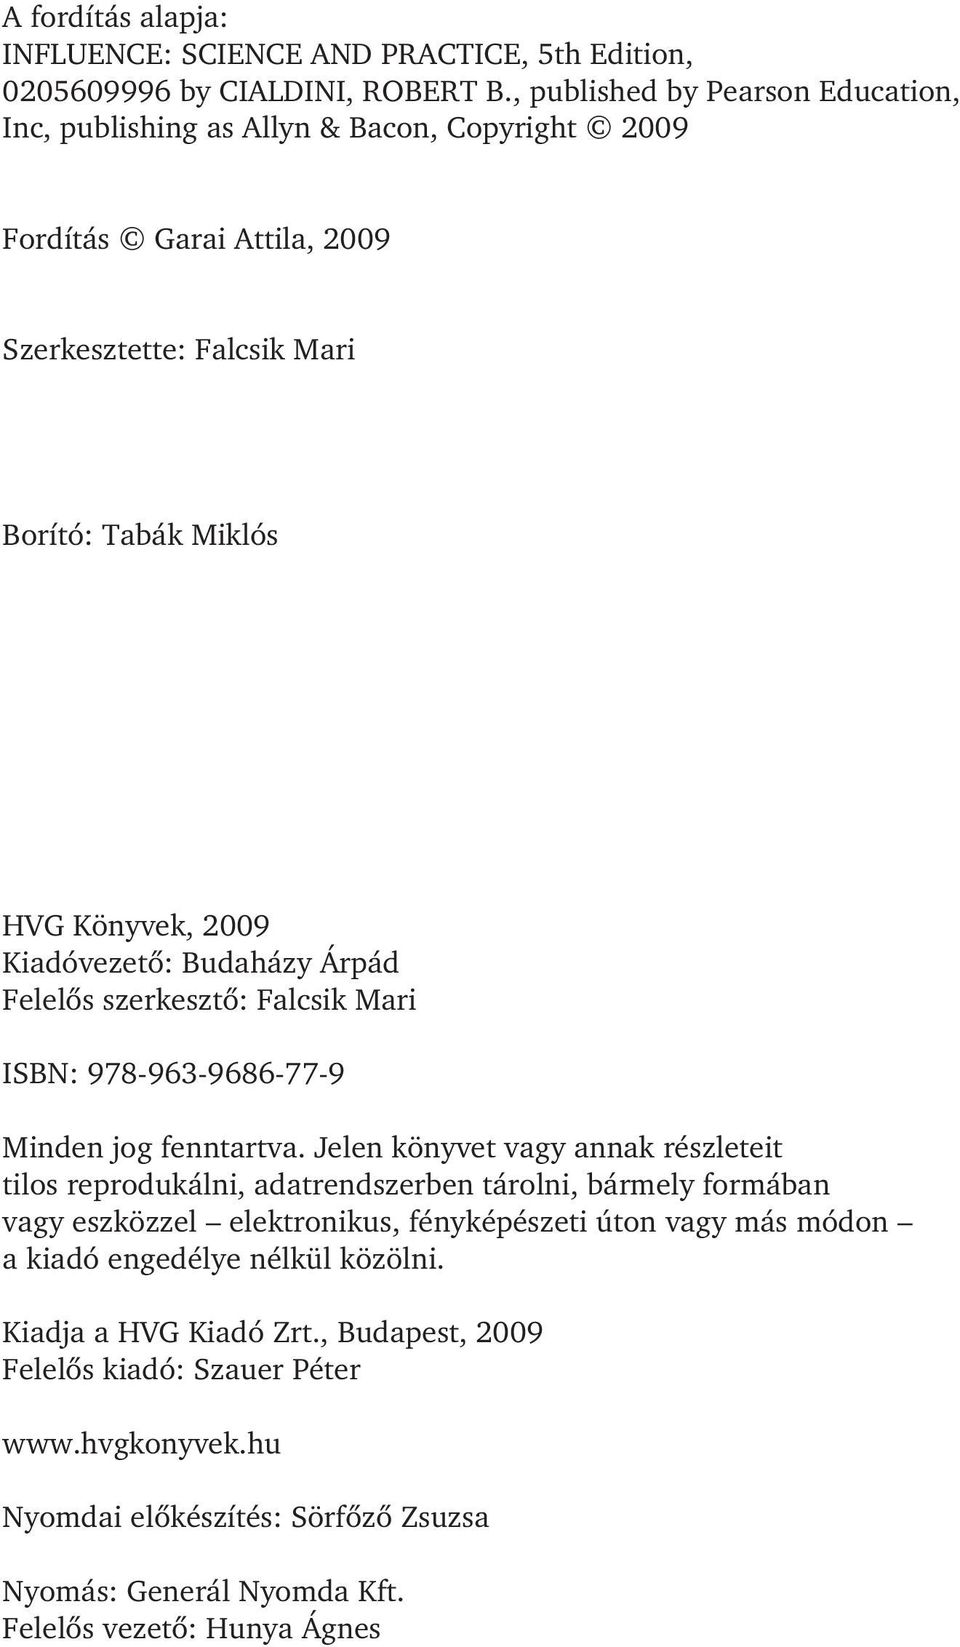 Kiadóvezetõ: Budaházy Árpád Felelõs szerkesztõ: Falcsik Mari ISBN: 978-963-9686-77-9 Minden jog fenntartva.